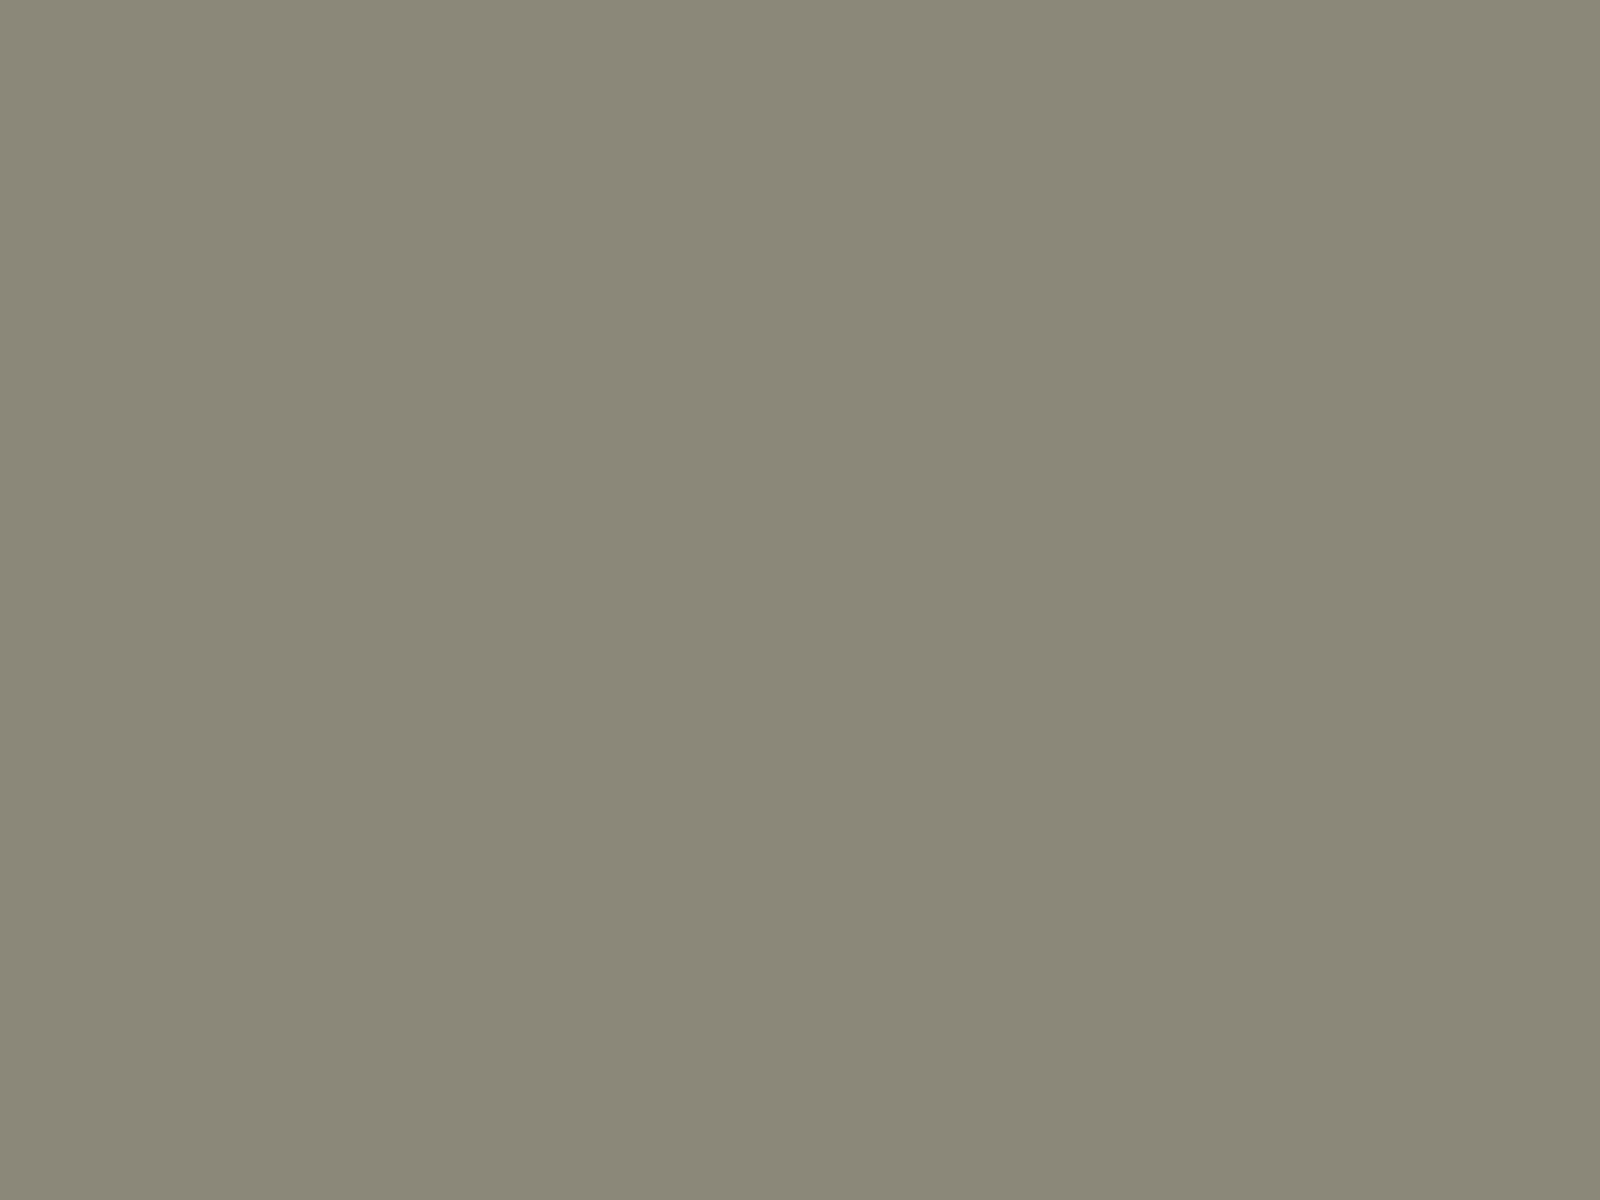 Степан Галактионов. Дача в парке (фрагмент). 1852. Тюменский музей изобразительных искусств, Тюмень